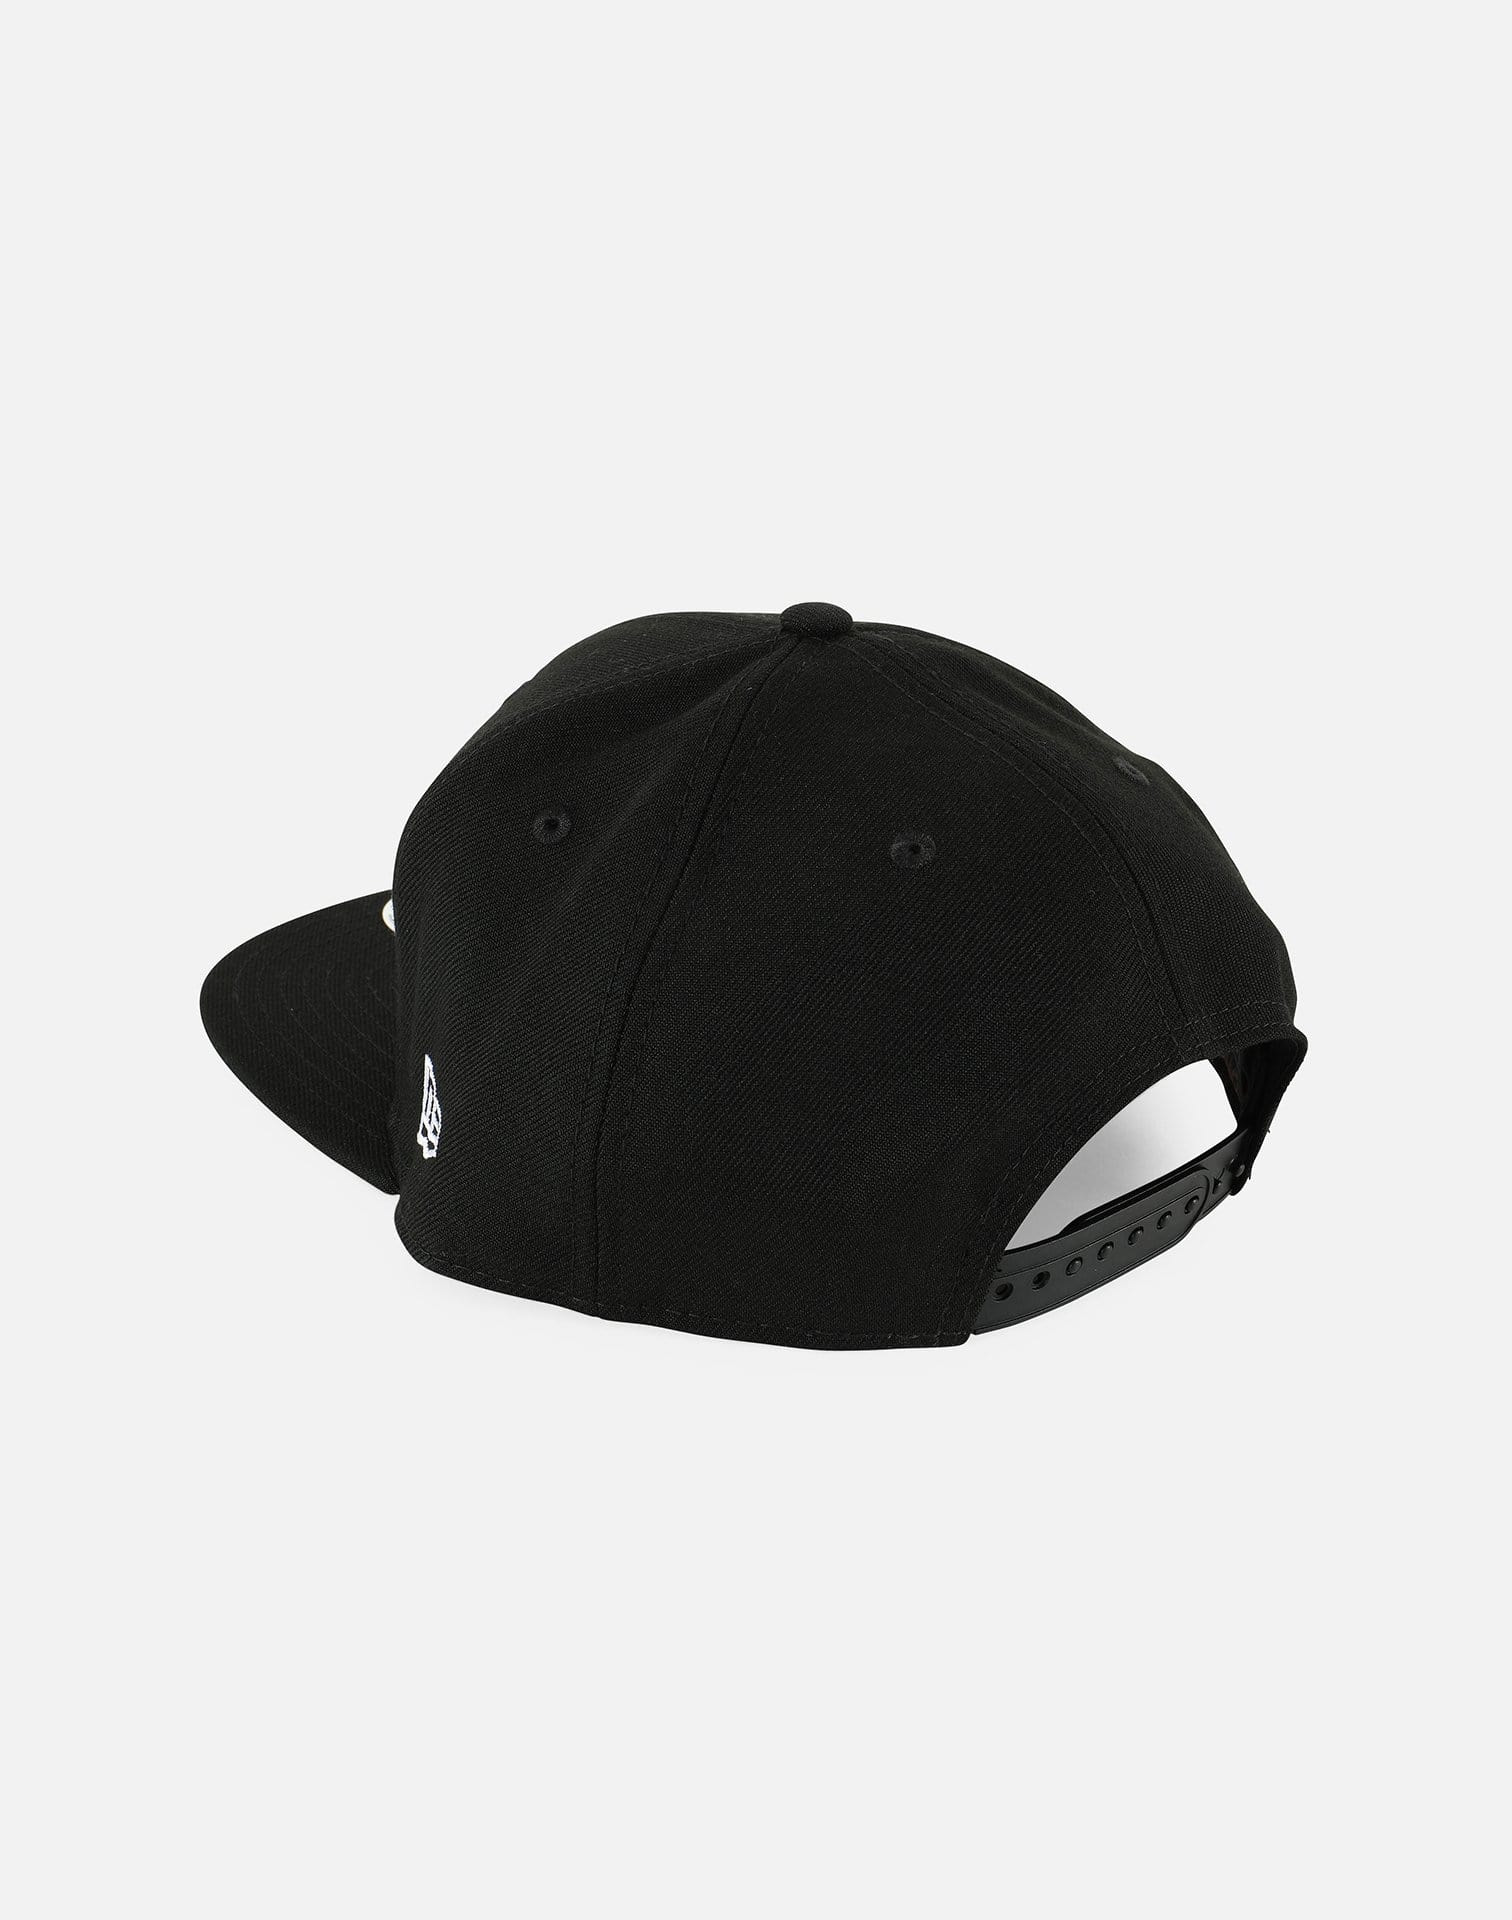 New Era Cleveland Raised Deluxe Snapback Hat